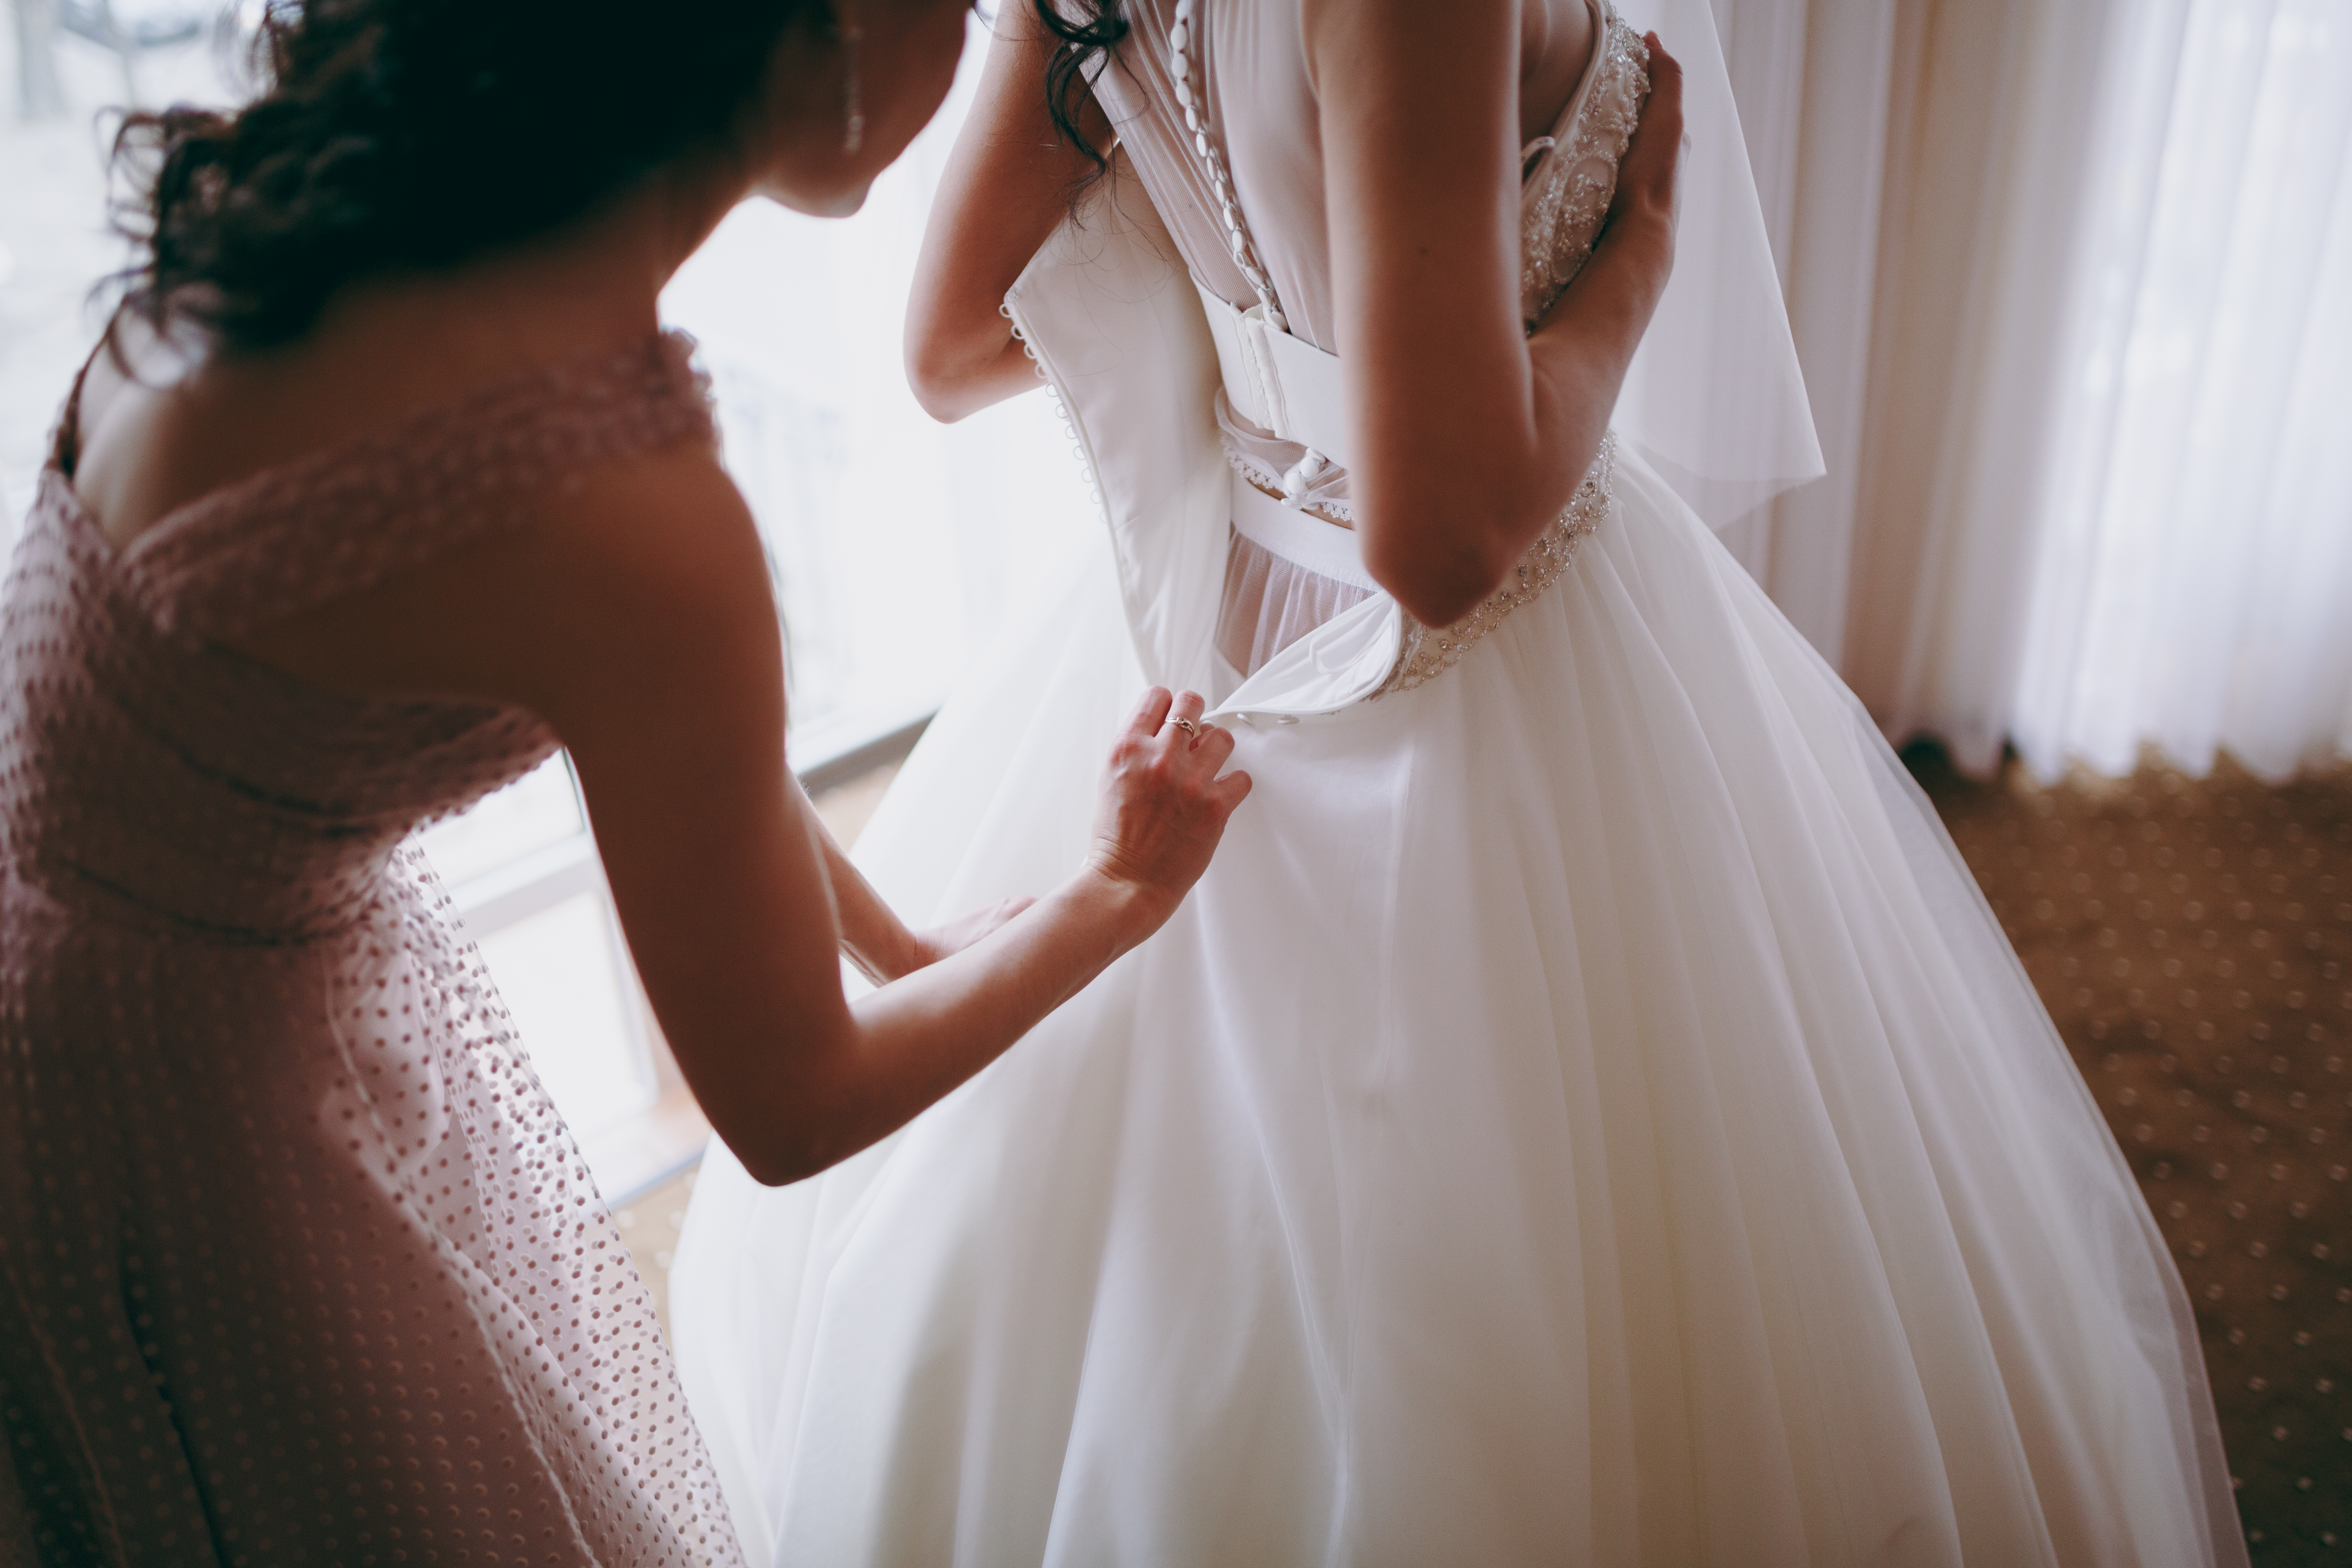 Une femme aidant une mariée à enfiler sa robe de mariée | Source : Shutterstock